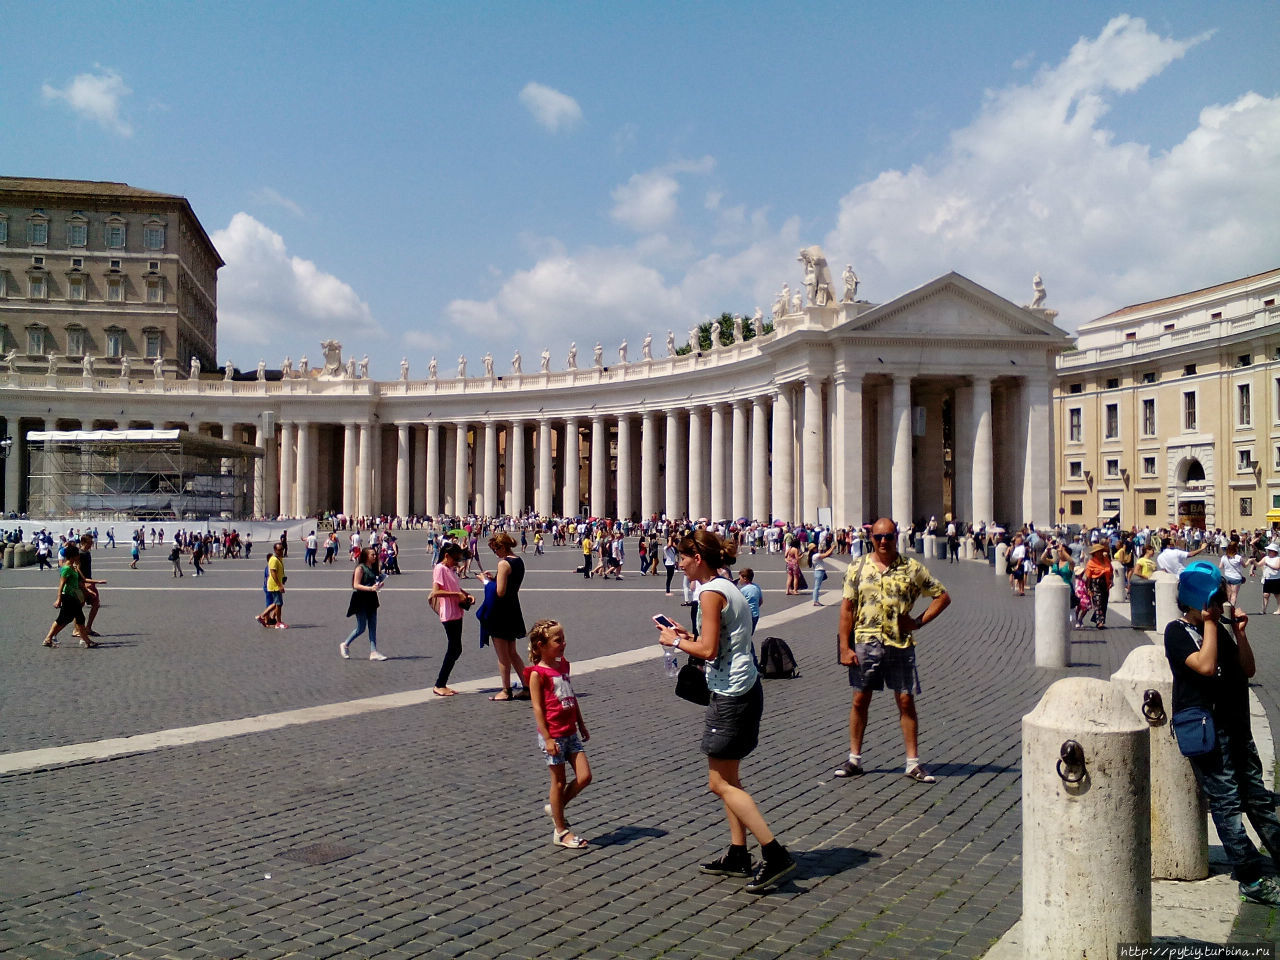 А вот какая очередь желающих попасть в Ватикан.
На фото на заднем плане Рим, Италия